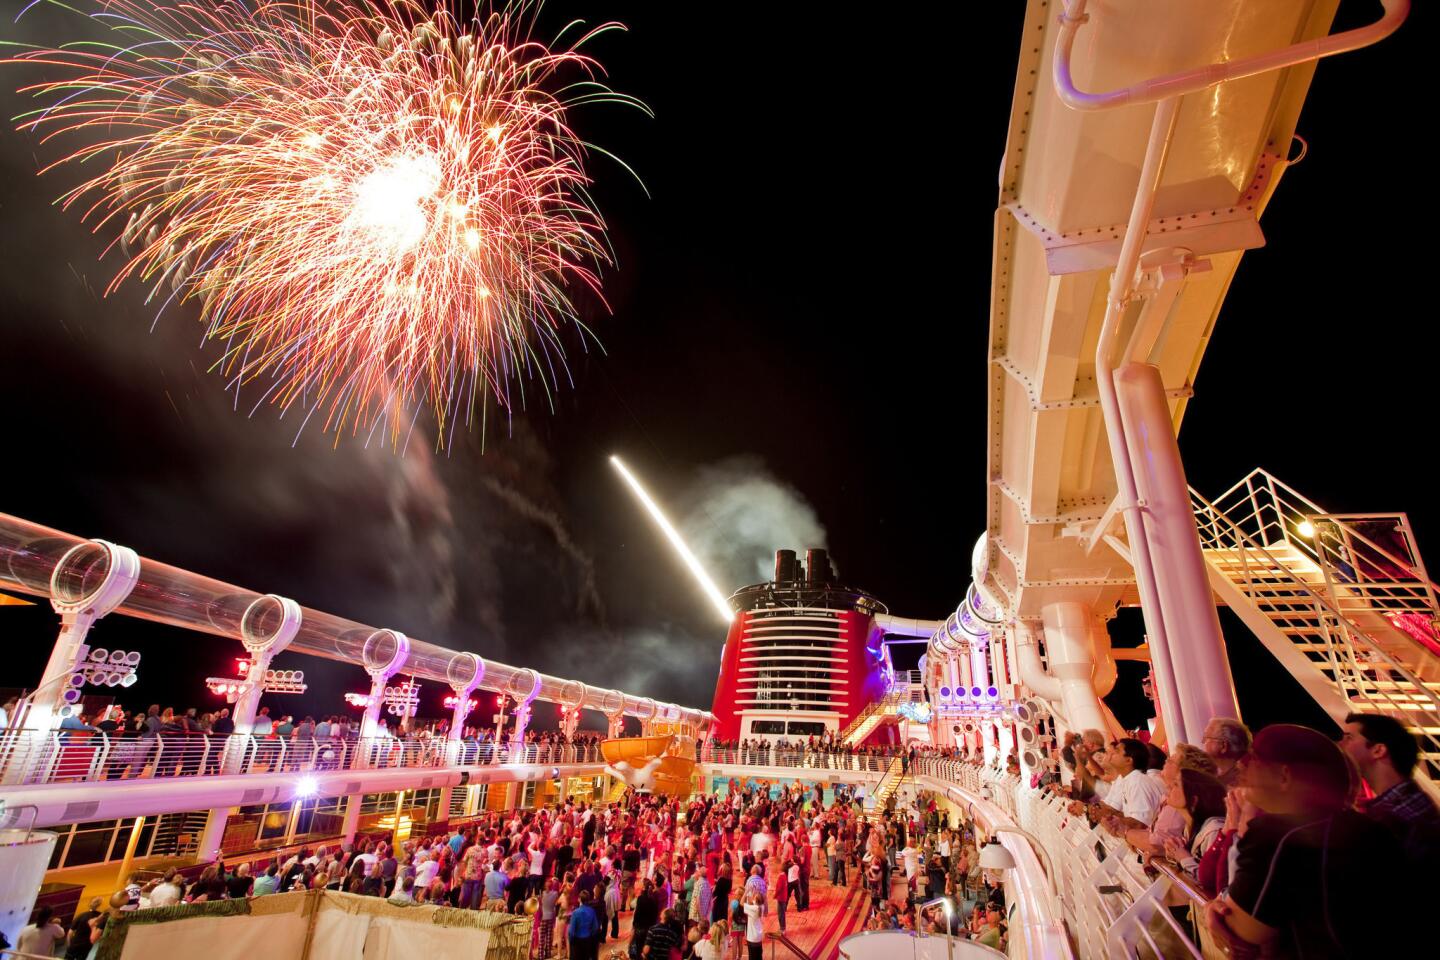 La última noche, la diversión es en grande con una fiesta pirata en cubierta, donde todos se disfrazan de piratas y disfrutan de efectos especiales y simpatía de los personajes Disney. Por supuesto, todo culmina con fuegos artificiales que iluminan altamar.